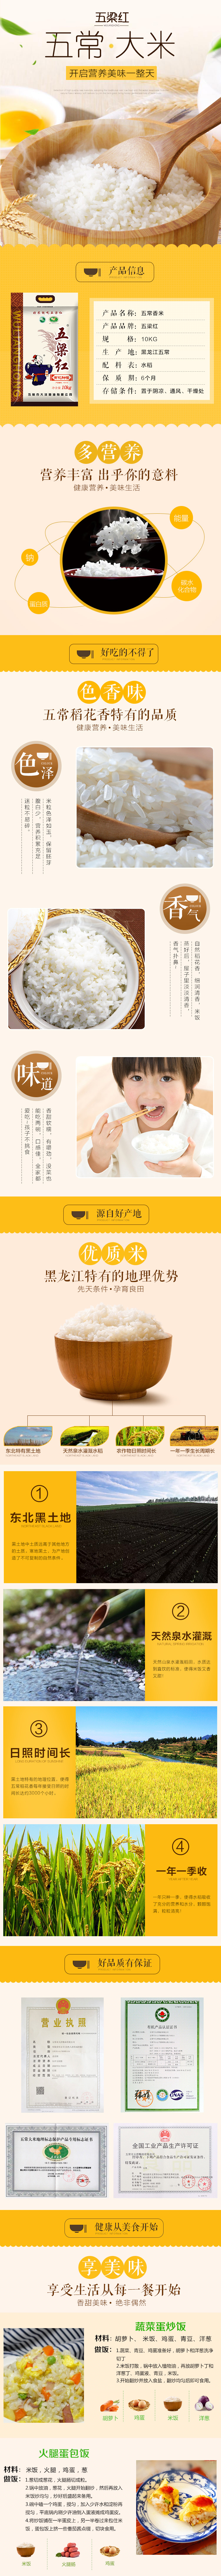 淘宝美工小潘潘大米食品保健果蔬粮油米面详情页作品